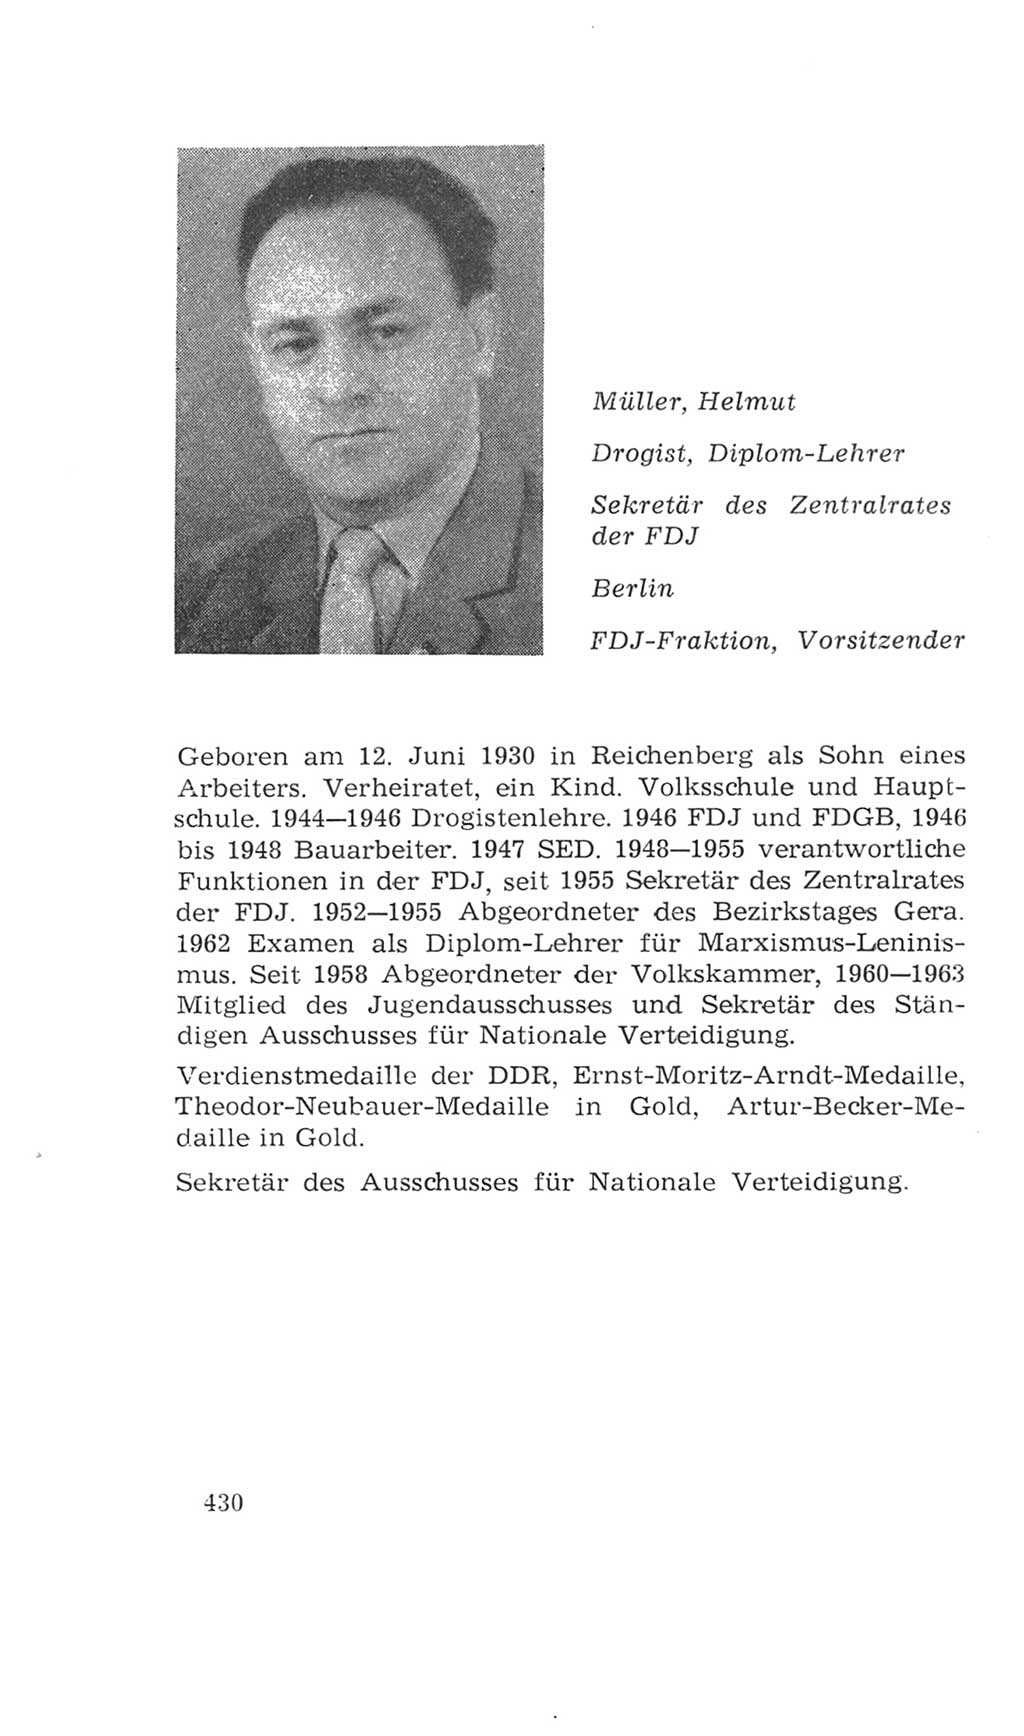 Volkskammer (VK) der Deutschen Demokratischen Republik (DDR), 4. Wahlperiode 1963-1967, Seite 430 (VK. DDR 4. WP. 1963-1967, S. 430)